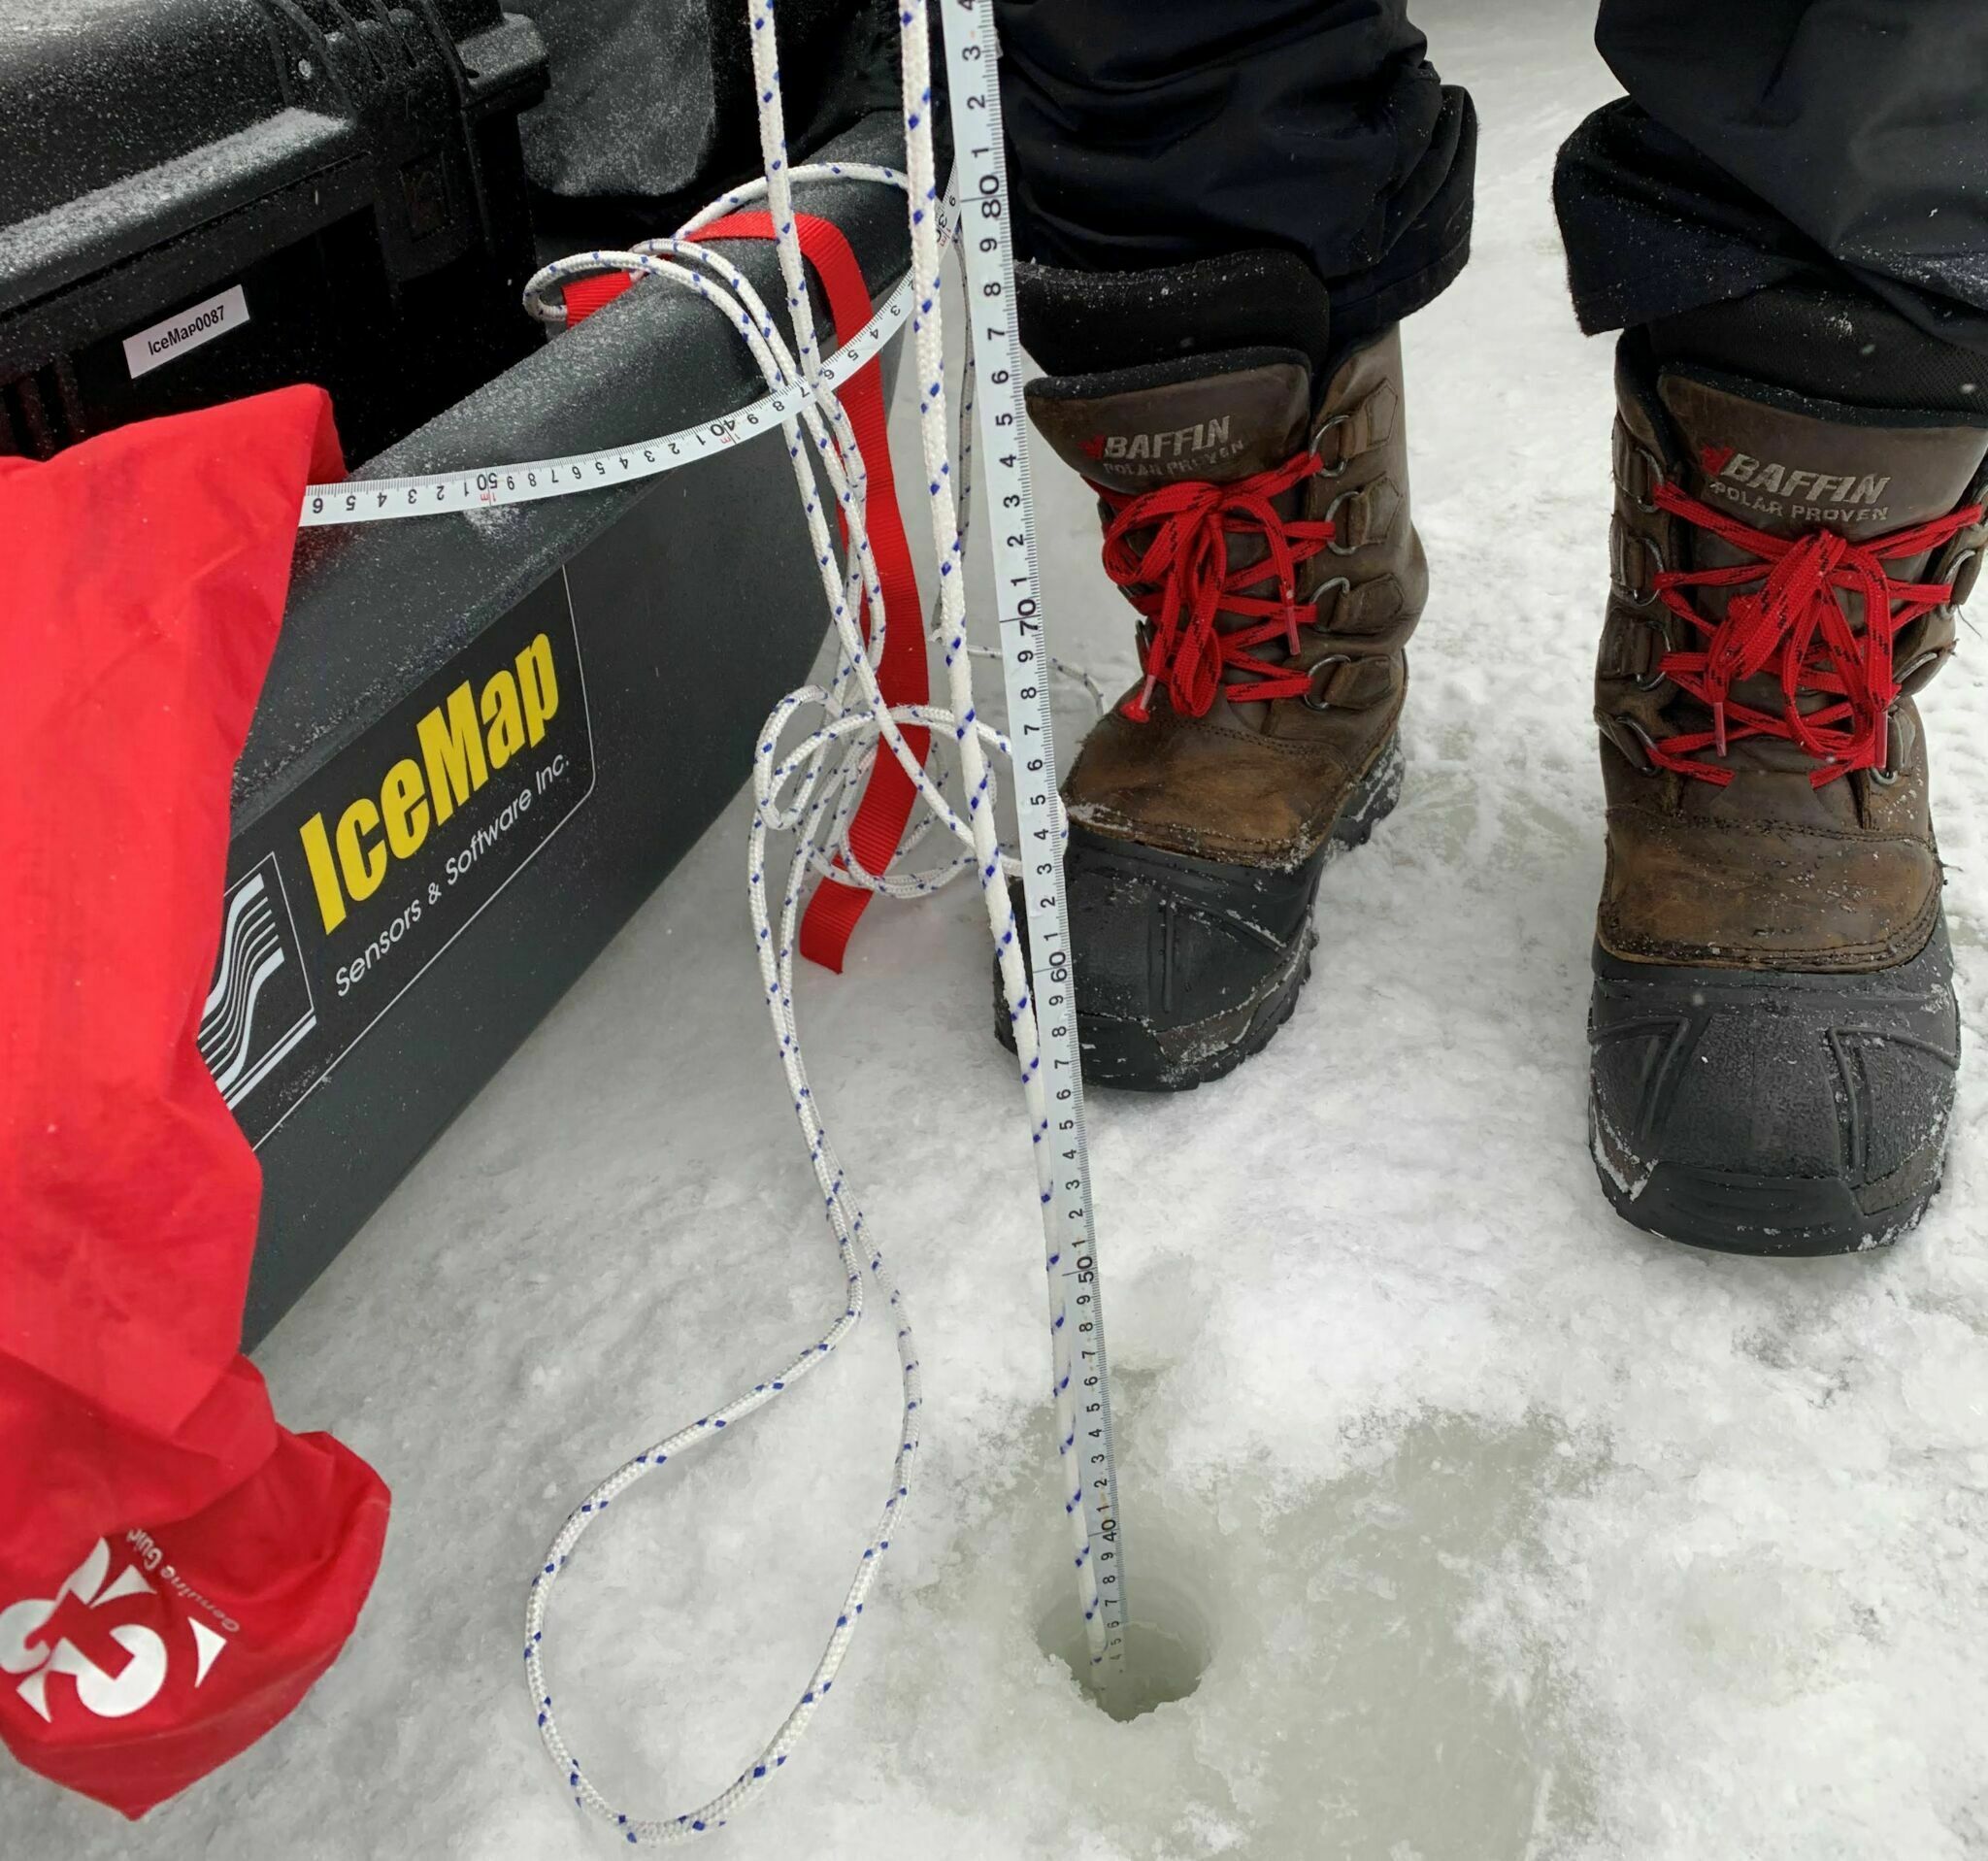 Installation d'une sonde dans la glace de la patinoire du Canal Rideau.